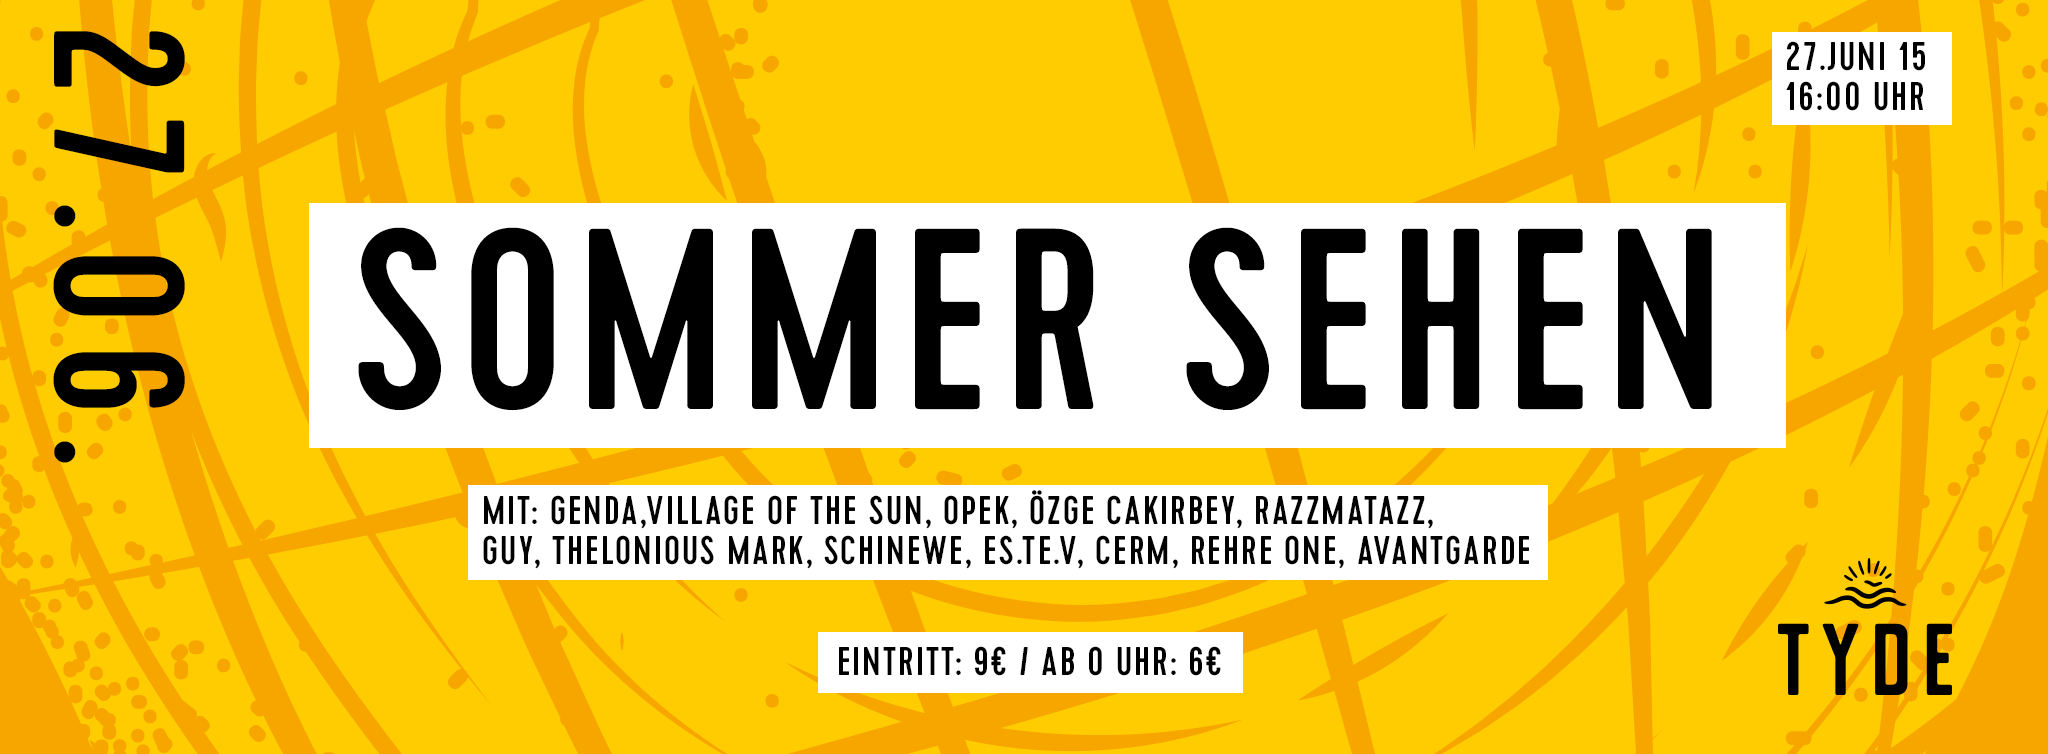 Festival: Sommer sehen